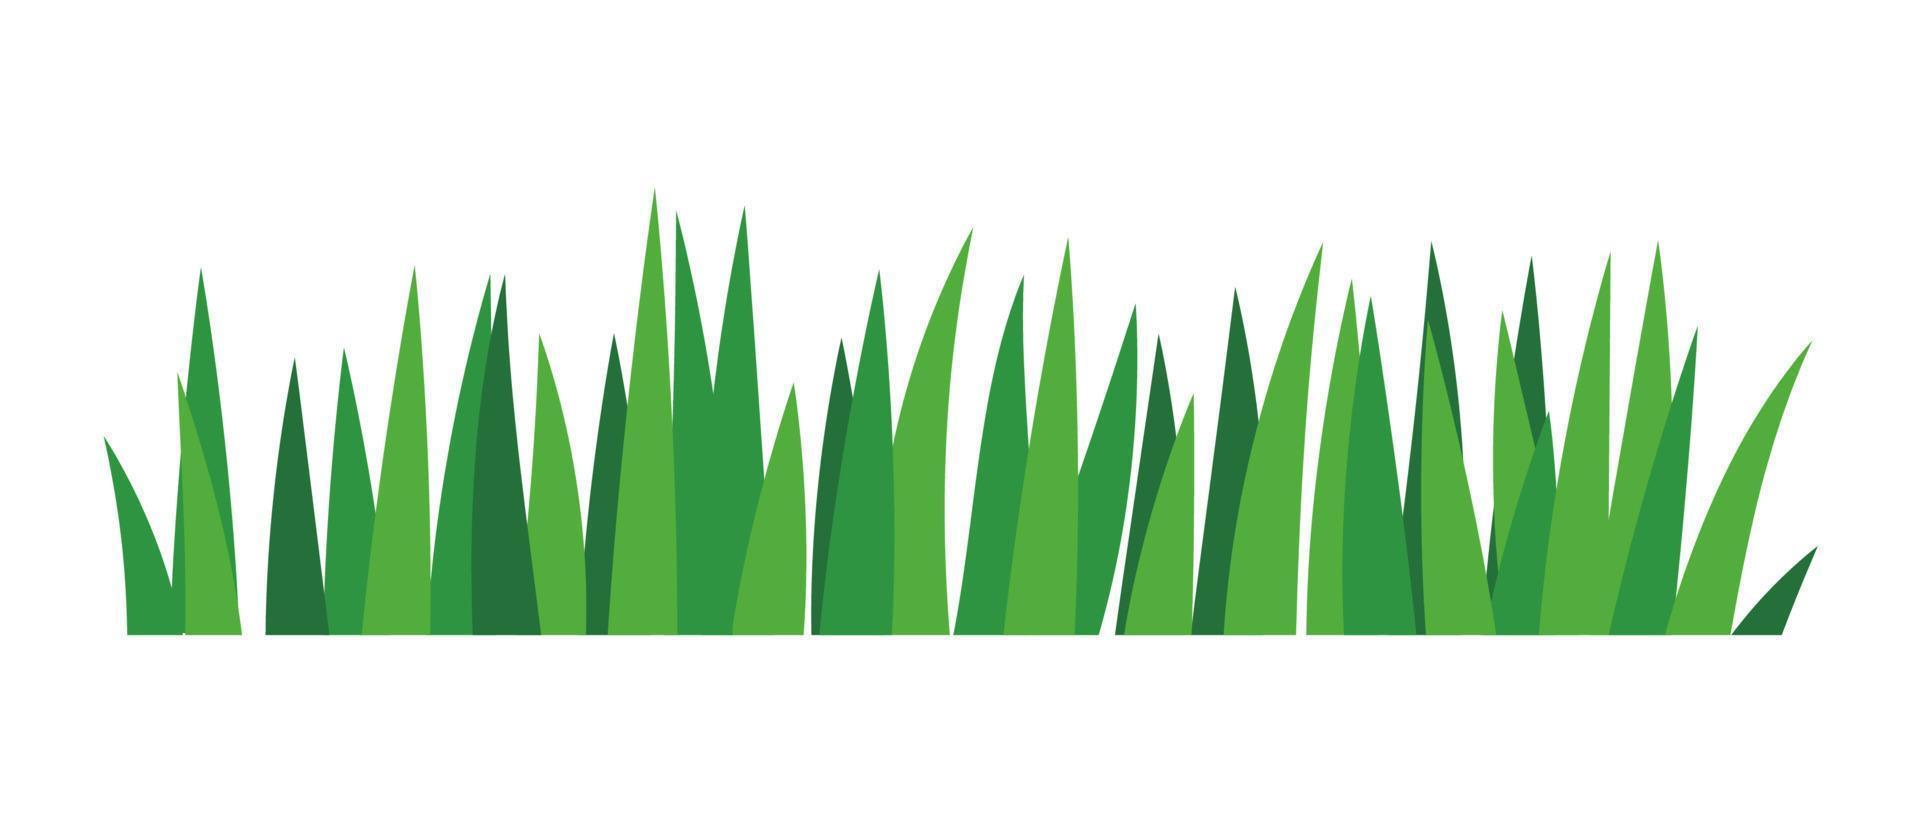 arbustos de grama verde natural decoram a cena dos desenhos animados de ecologia ambiental vetor